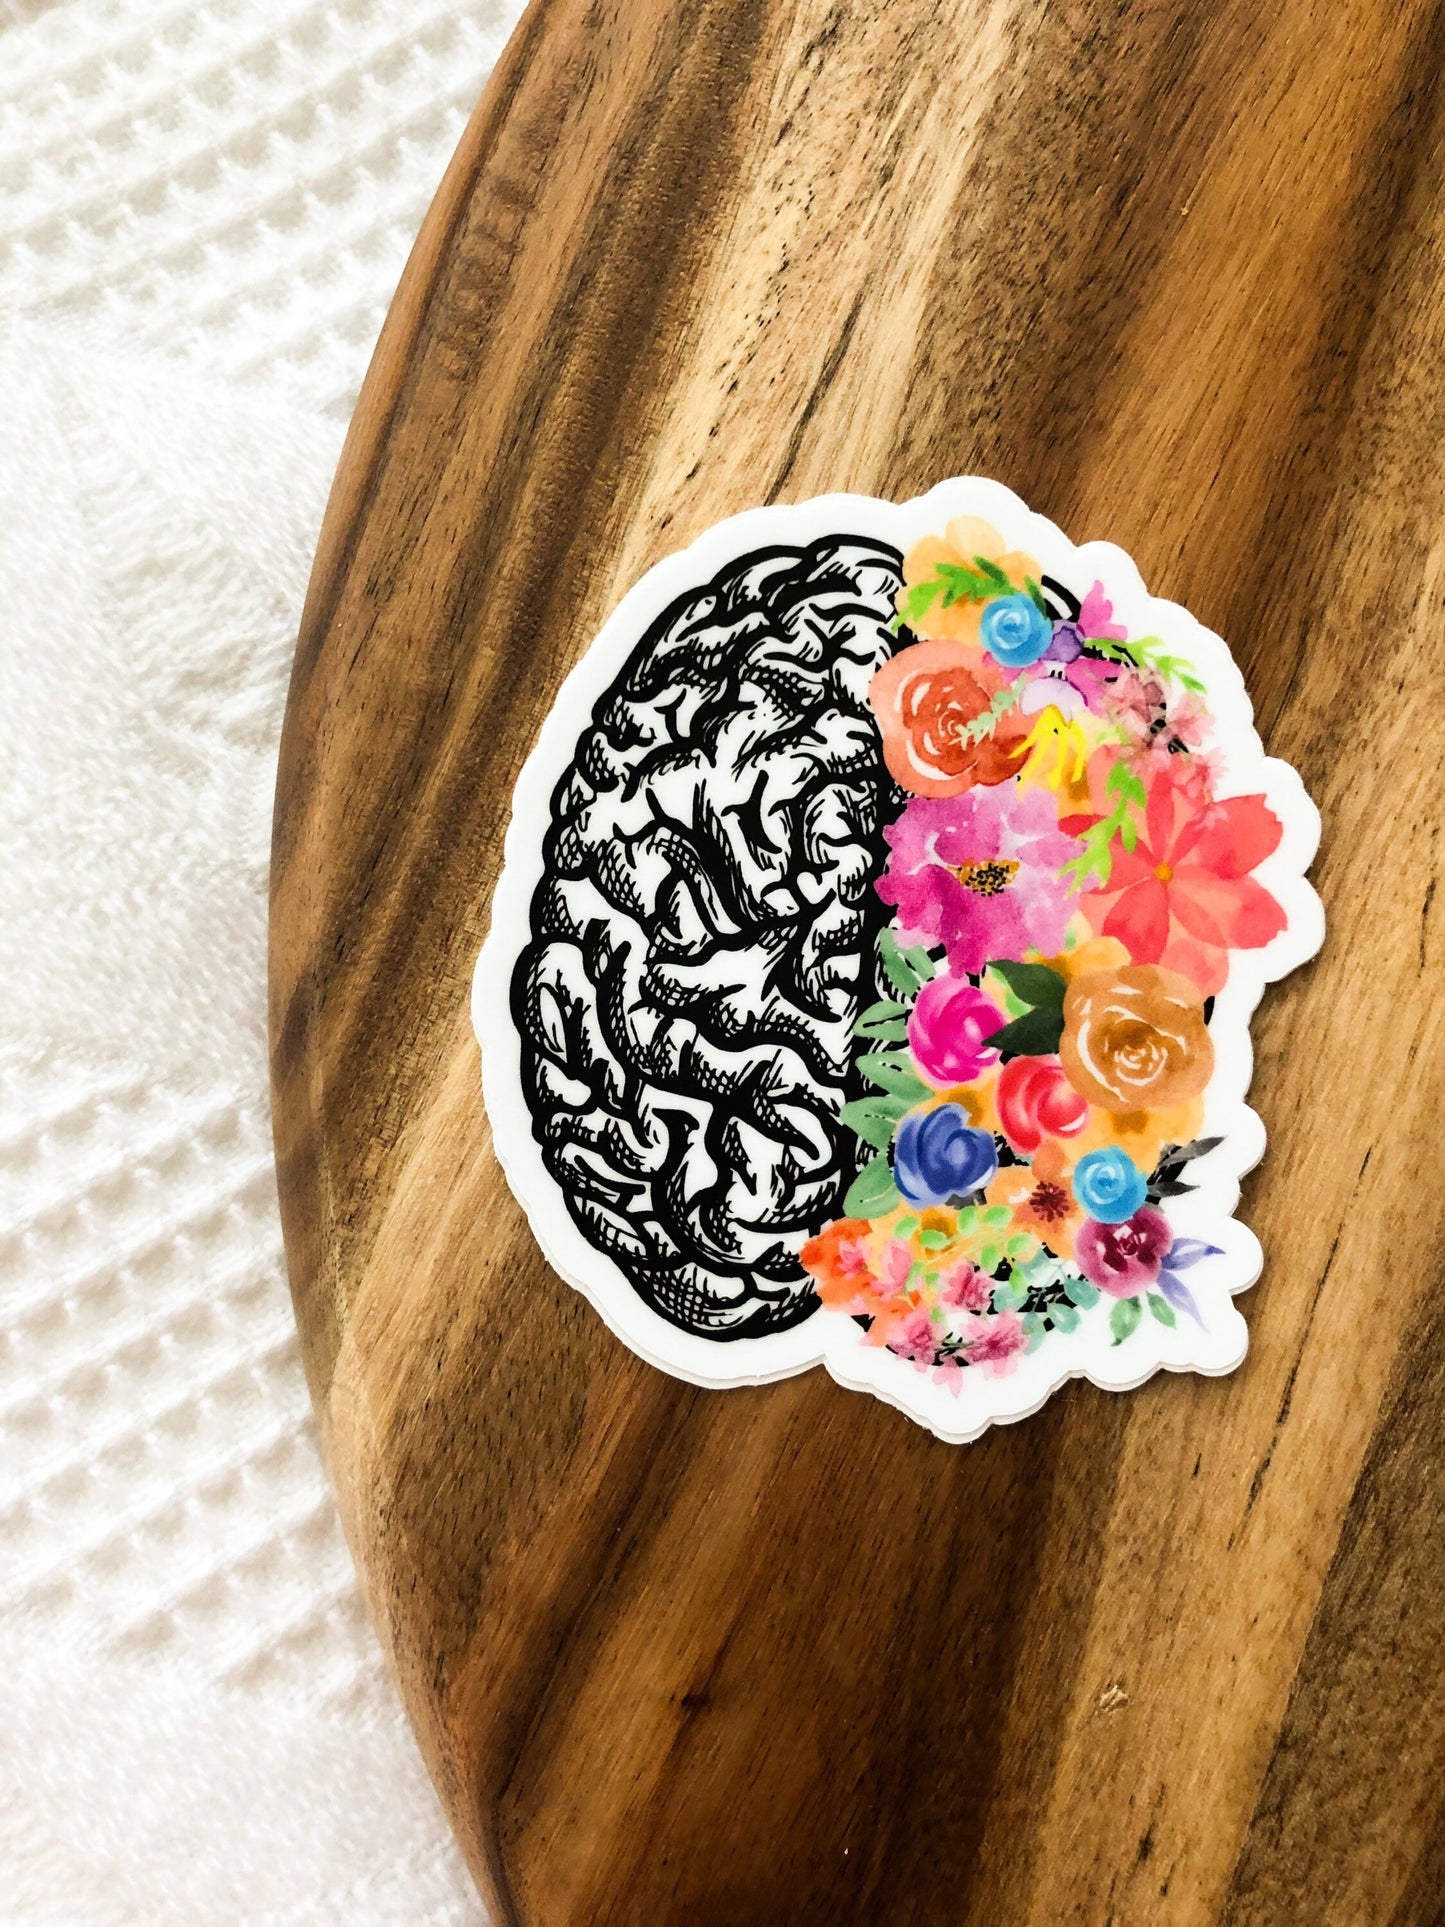 floral brain magnet for fridge, brain cancer survivor gift, neurodiversity magnet, cute whiteboard magnet for teacher, therapist gift mental